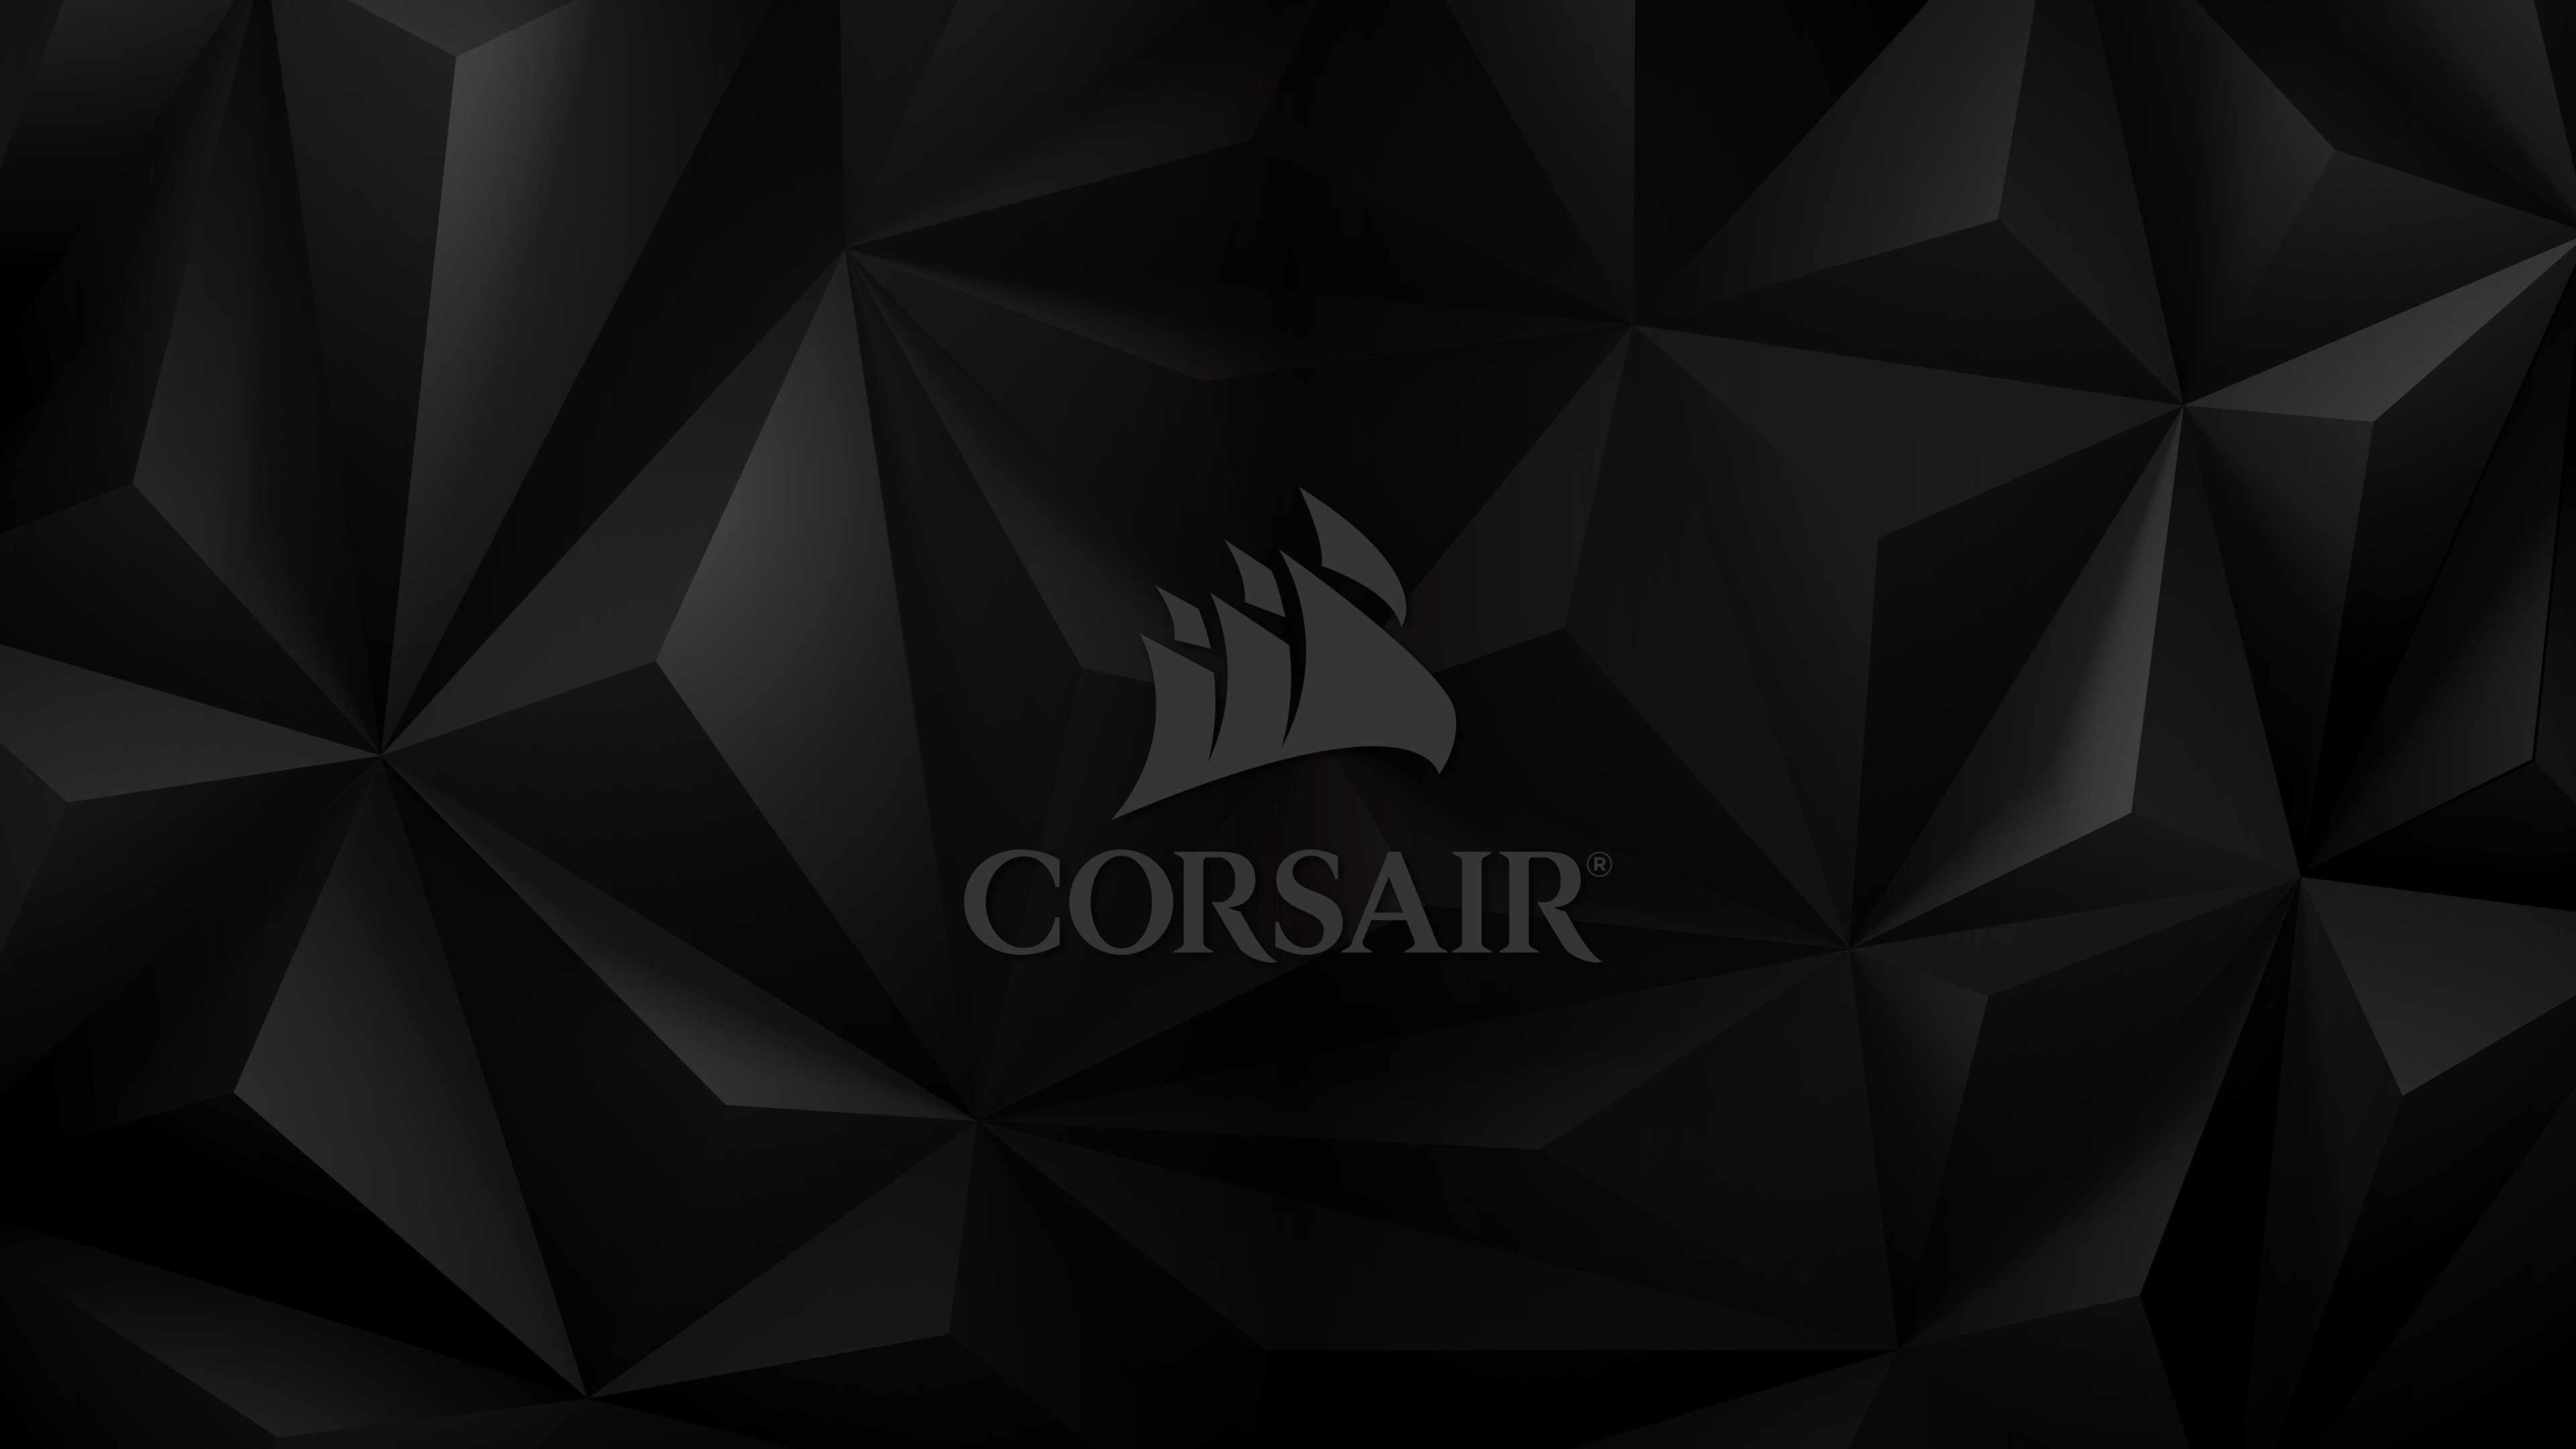 Corsair HD Wallpaper Free Corsair HD Background